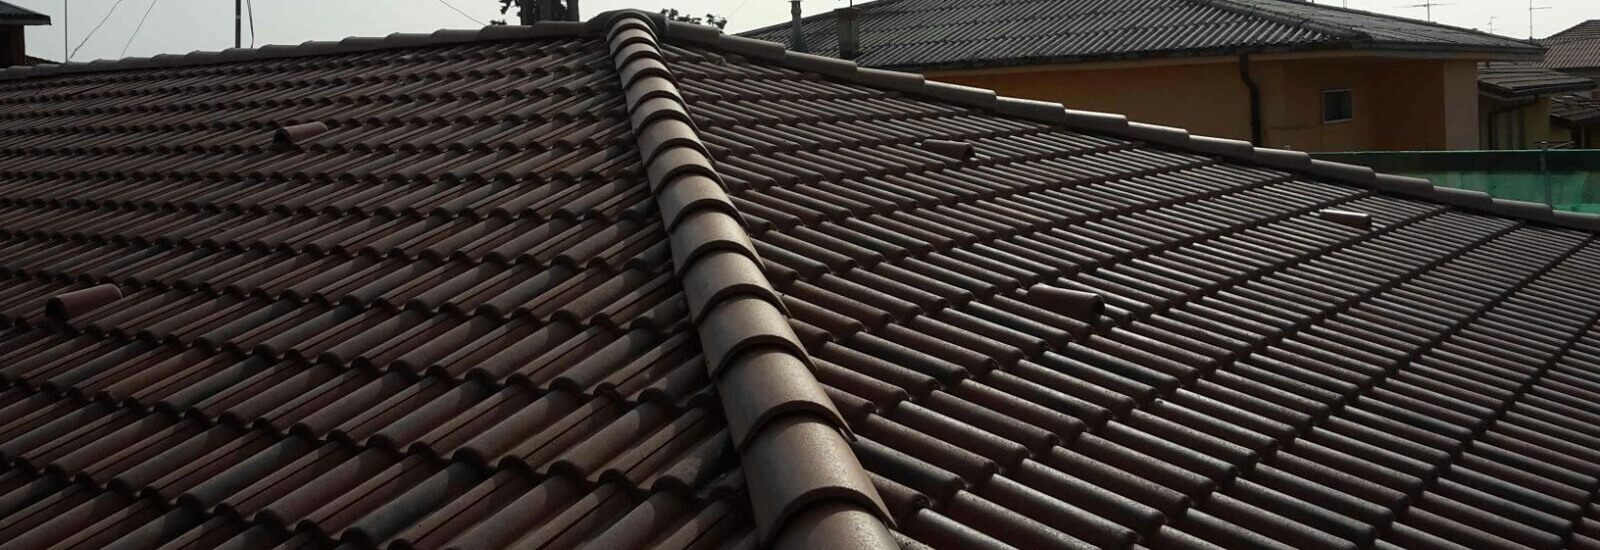 Realizzazione tetti ventilati bergamo tetti isolati e tetti in legno certificati